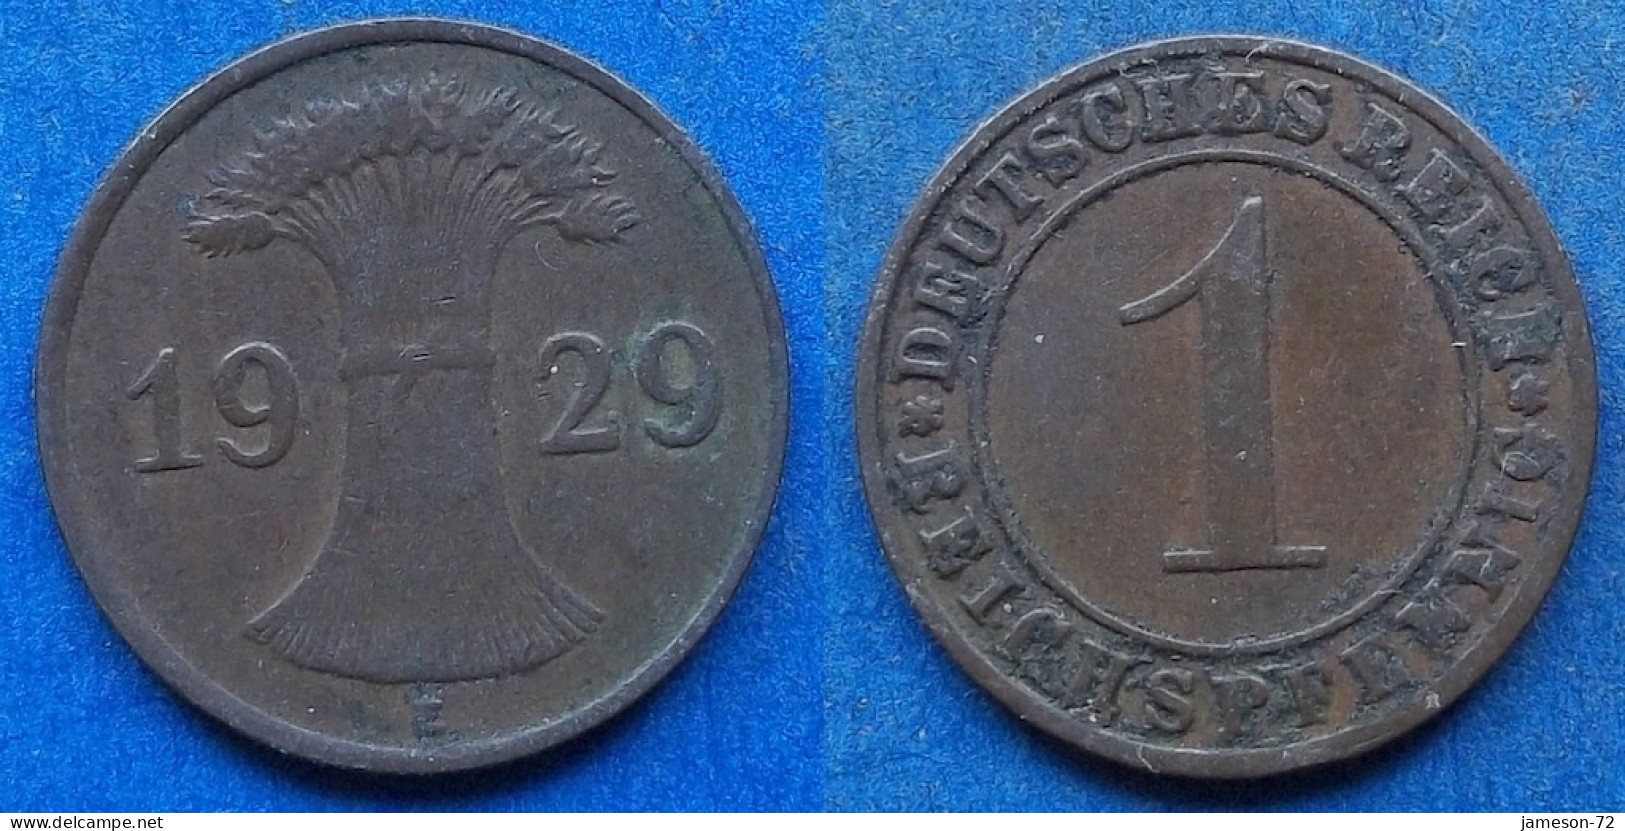 GERMANY - 1 Reichspfennig 1929 E KM# 37 Weimar Republic Reichsmark Coinage (1924-1938) - Edelweiss Coins - 1 Renten- & 1 Reichspfennig